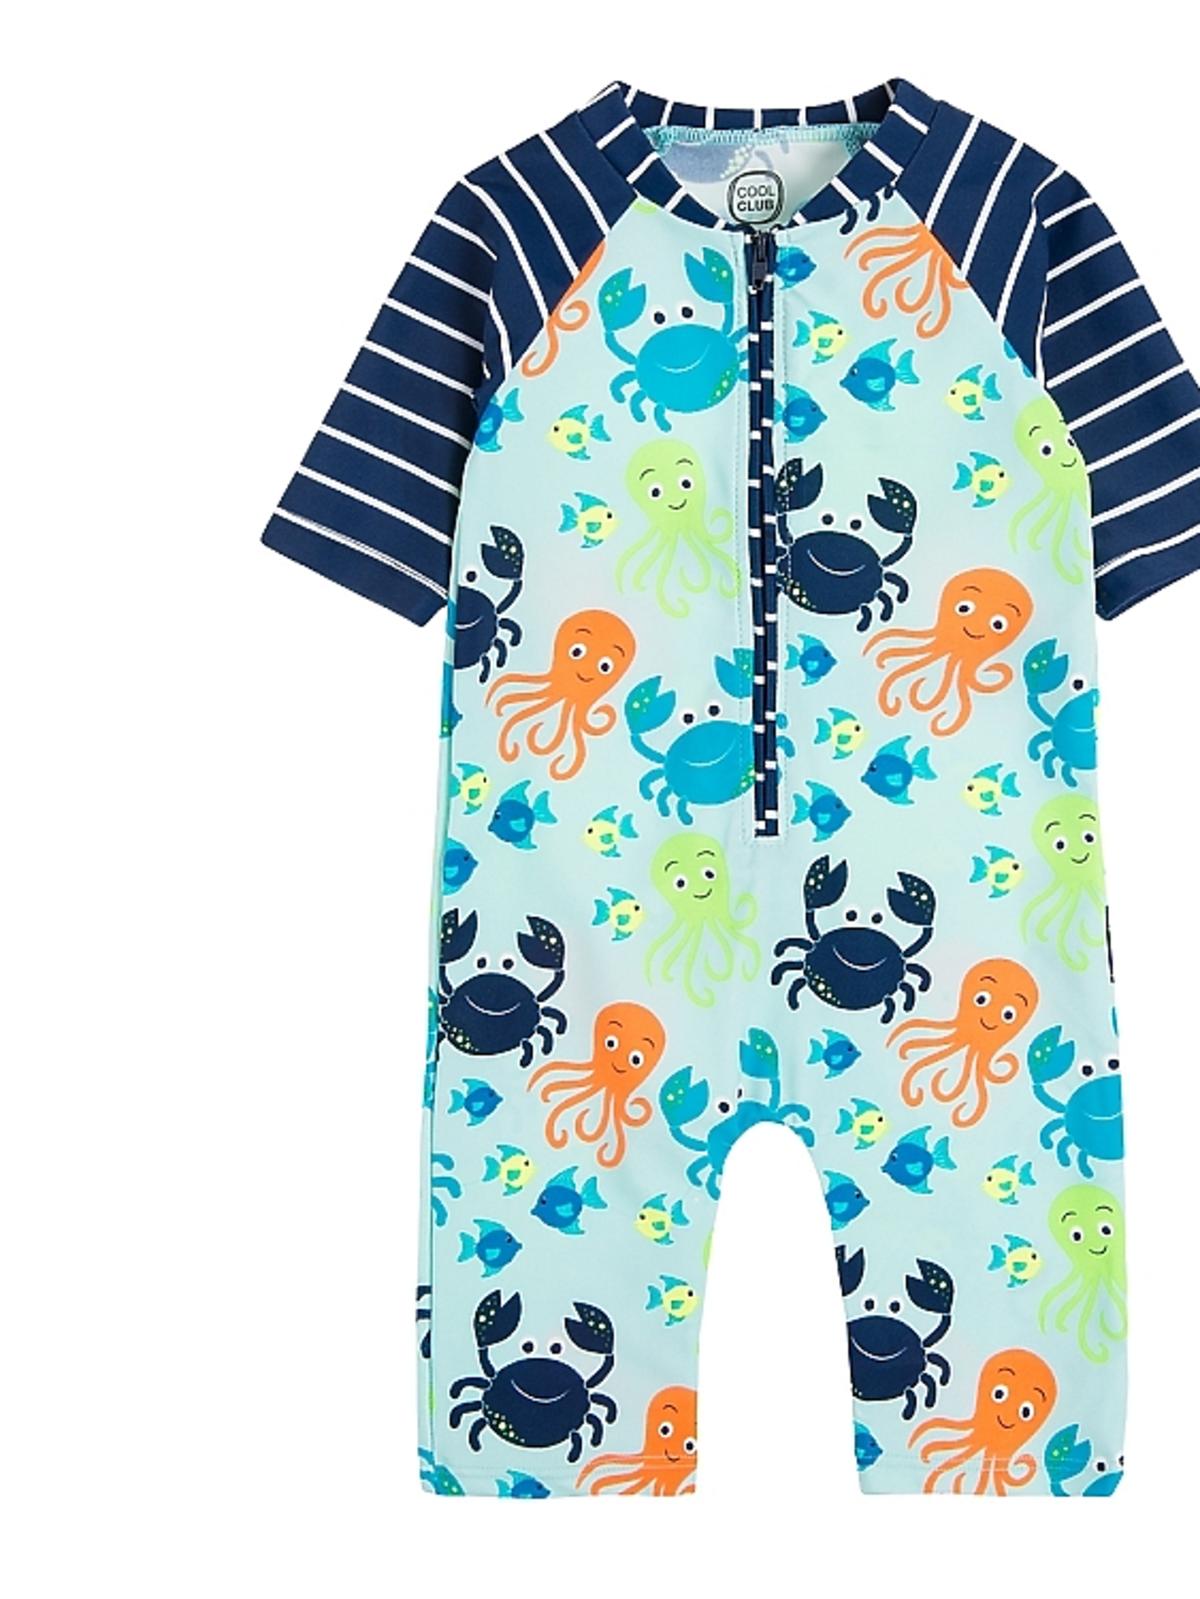 kostium kąpielowy UV niemowlęcy cool club 25zł z 49.99zł.jpg